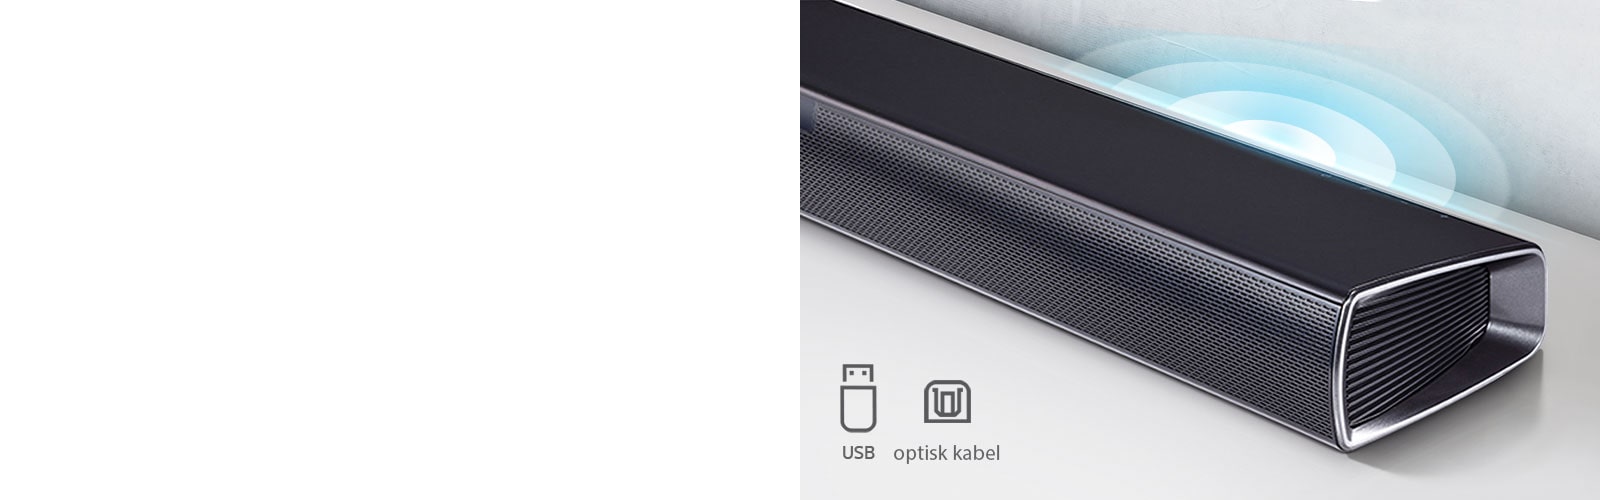 LG Soundbar är på en vit hylla. Grafik som visar ljud kommer ut från högtalaren. Den visar ikoner för USB och optisk kabel